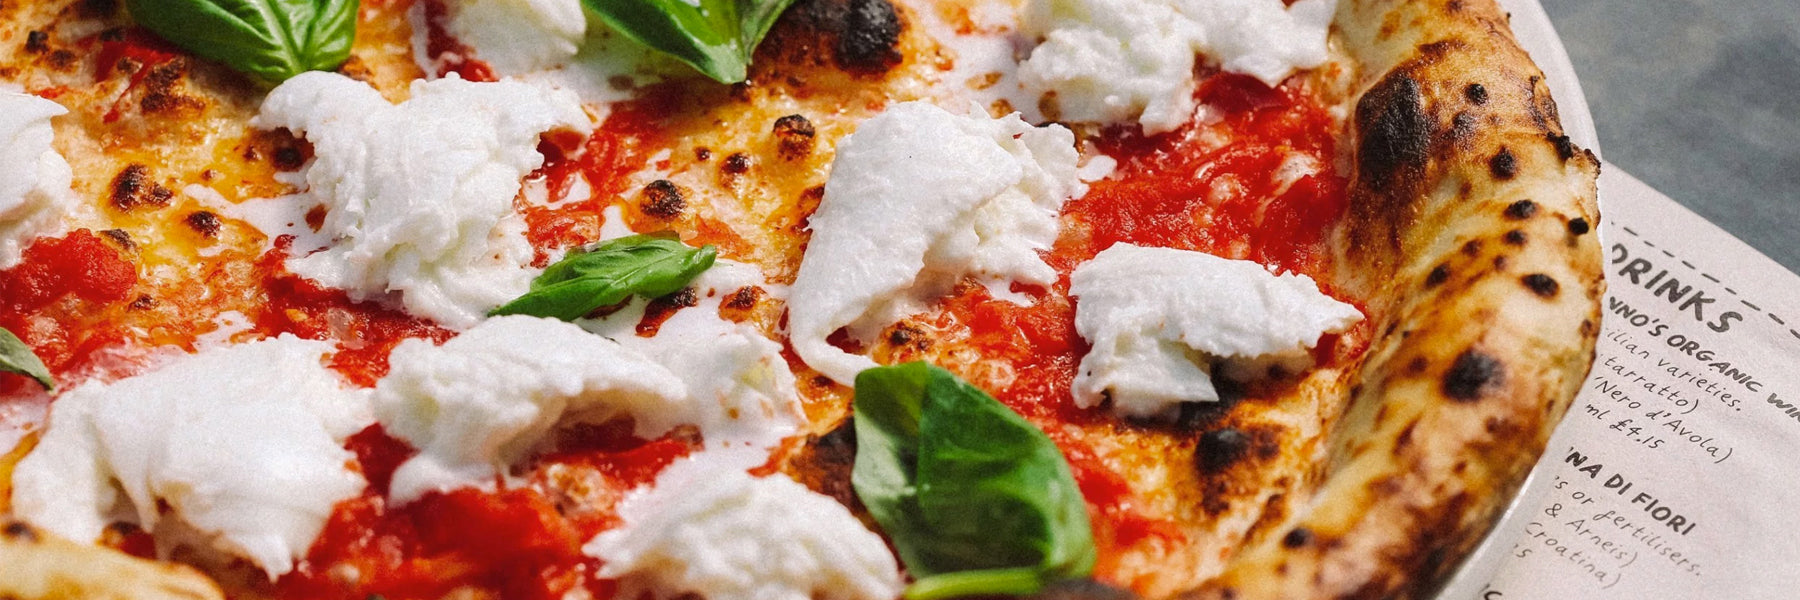 Italian-style Pizza